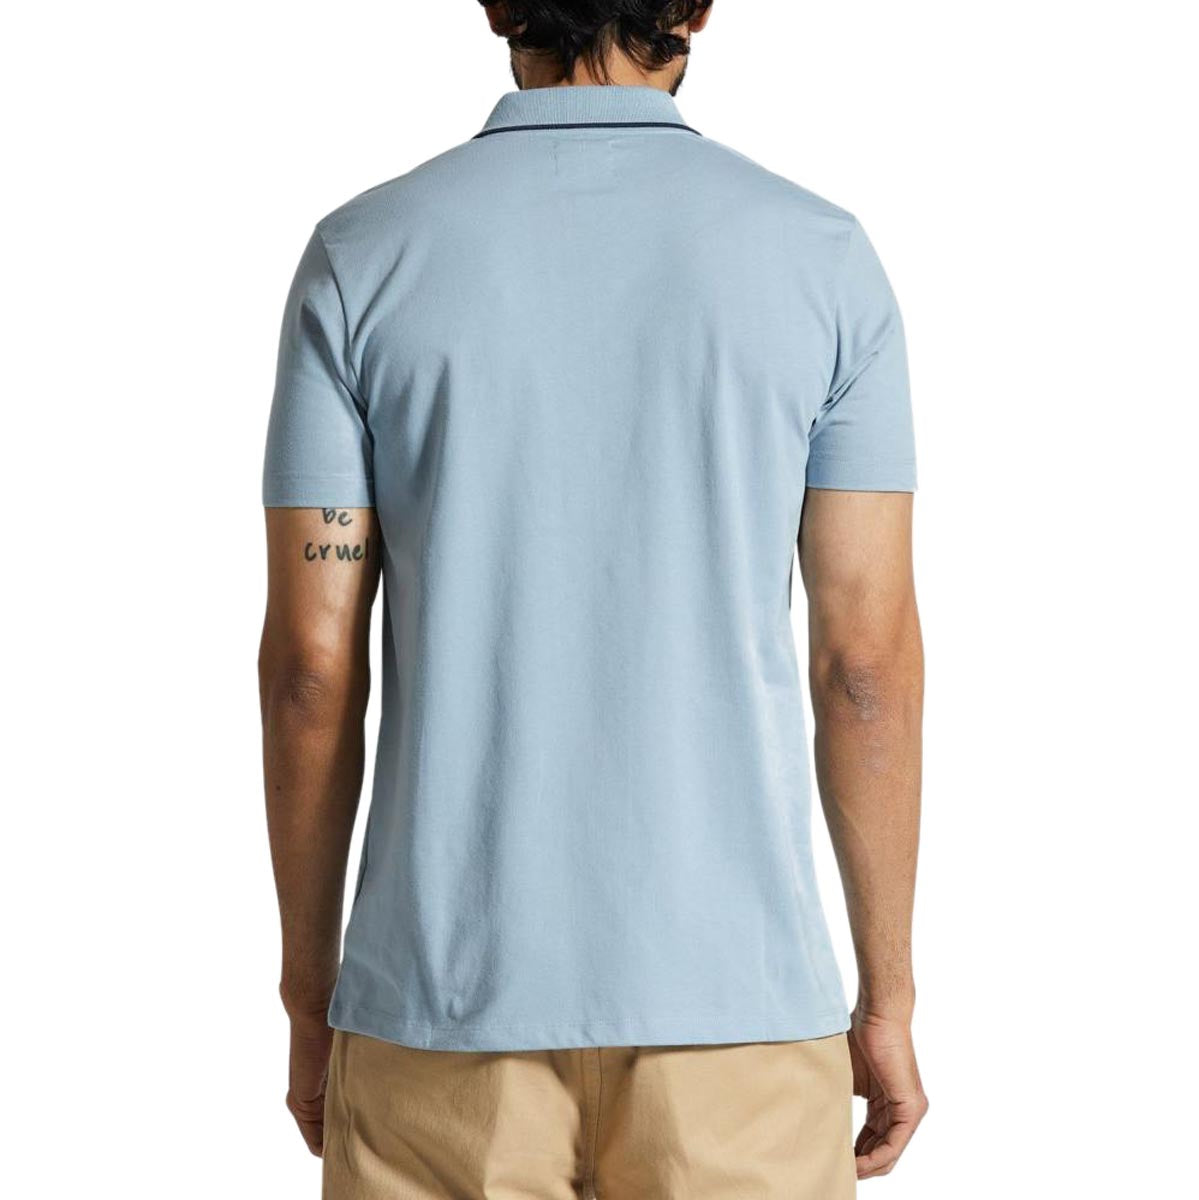 Brixton Mod Flex Polo Shirt - Dusty Blue/Washed Navy image 2